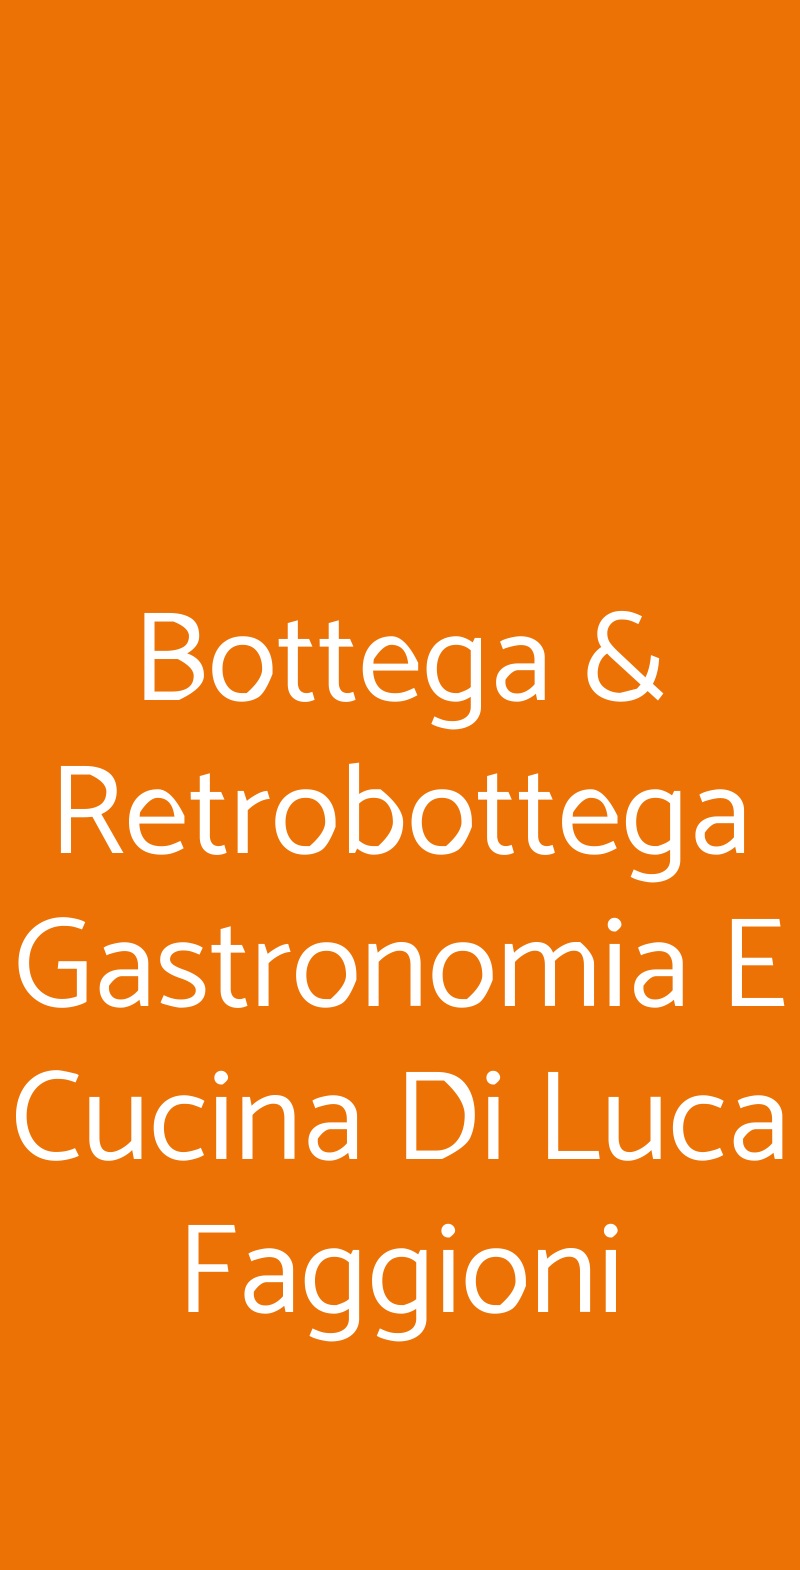 Bottega & Retrobottega Gastronomia E Cucina Di Luca Faggioni Cerea menù 1 pagina